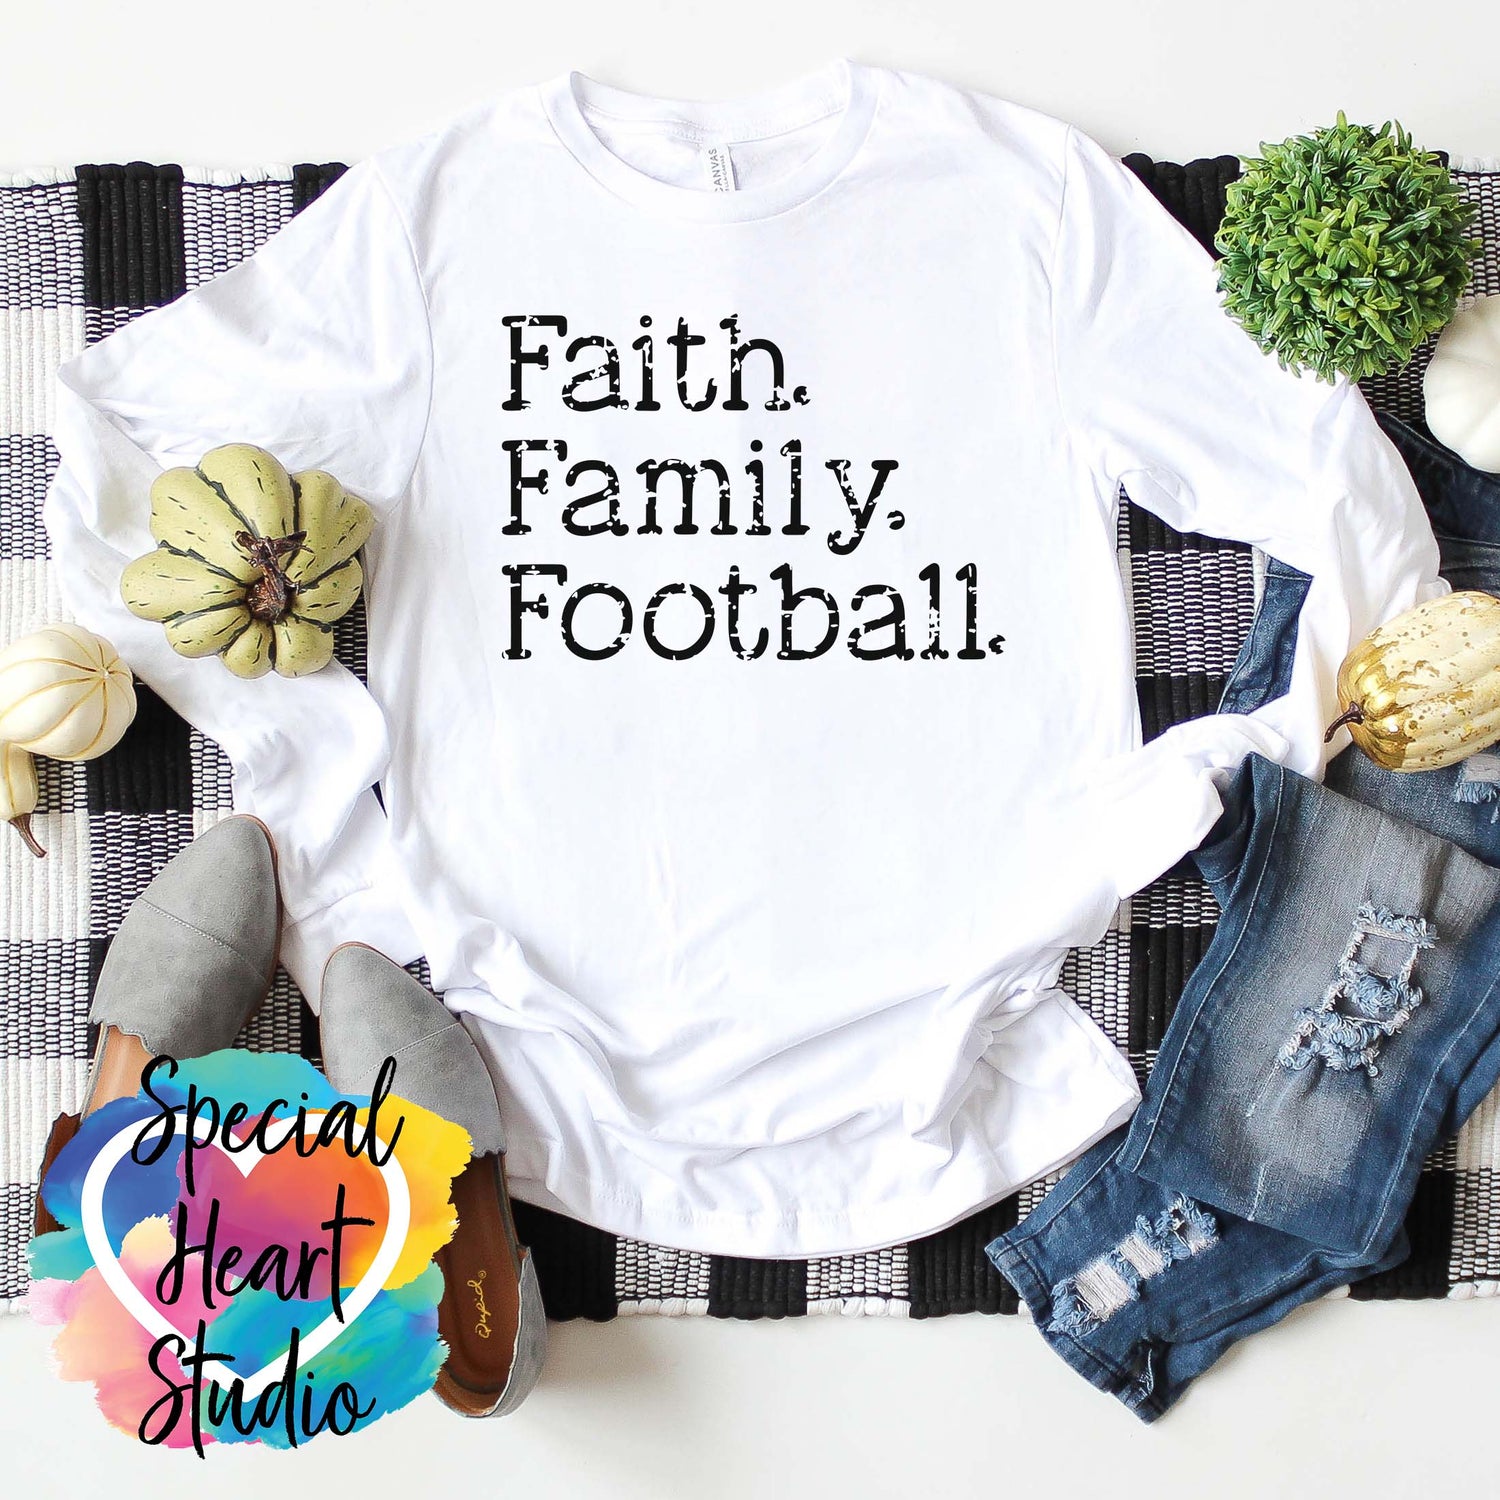 Faith Family Football white shirt mockup